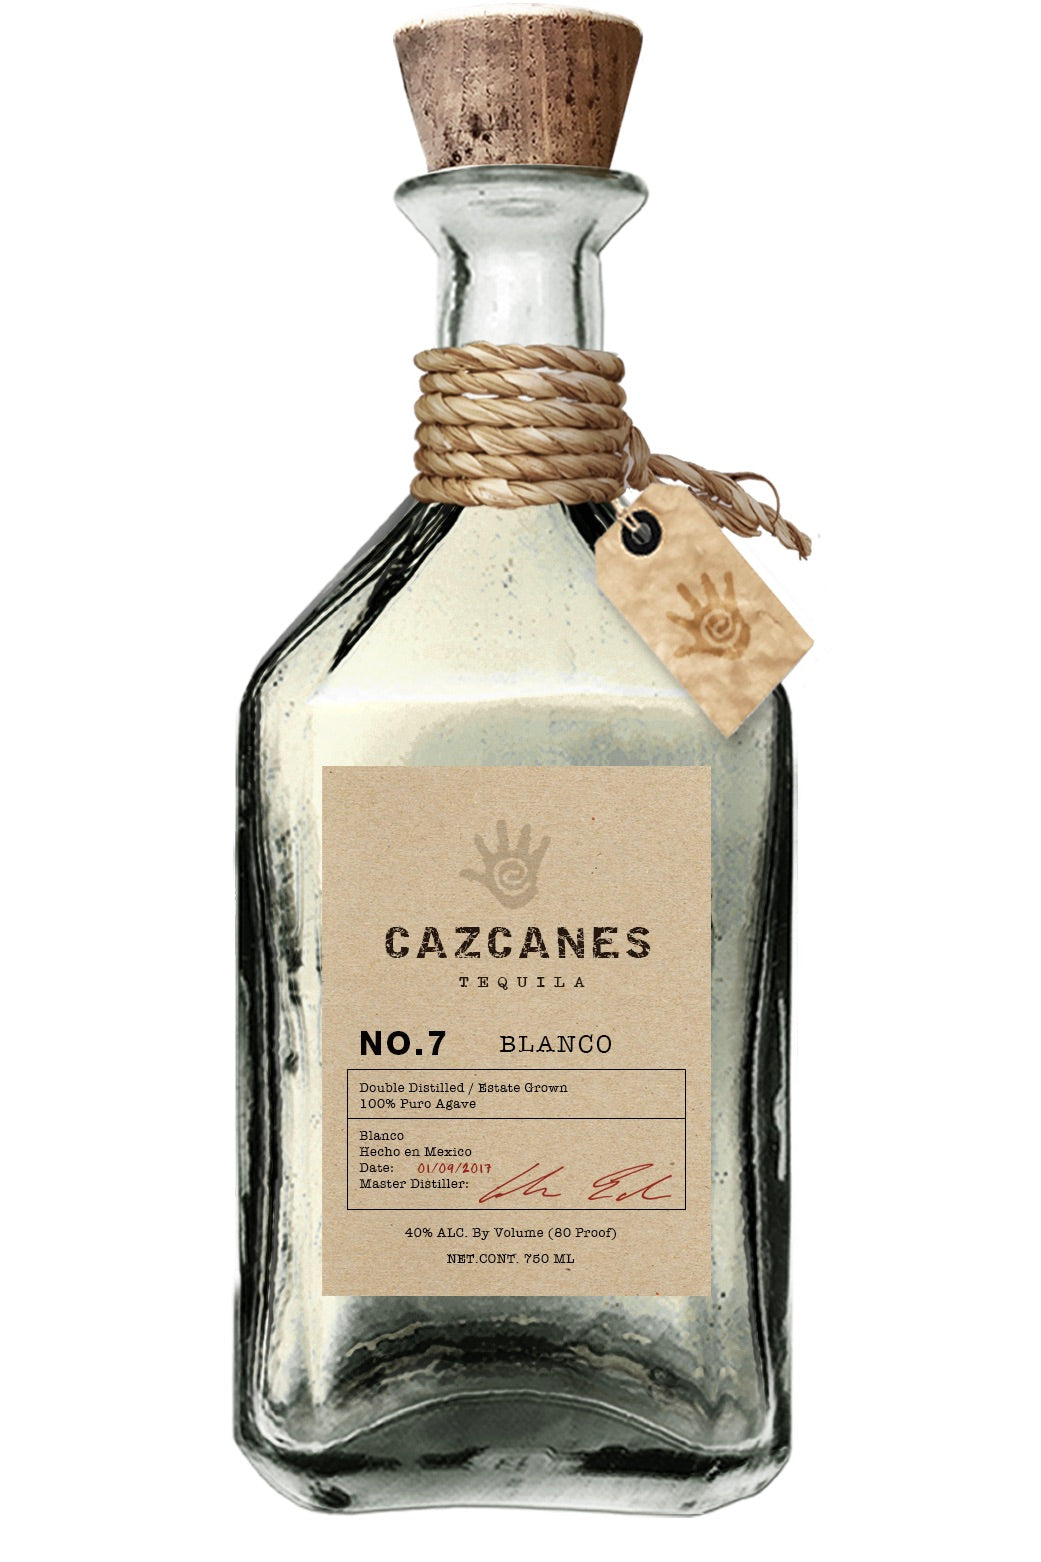 Cazcanes Tequila Blanco No. 7